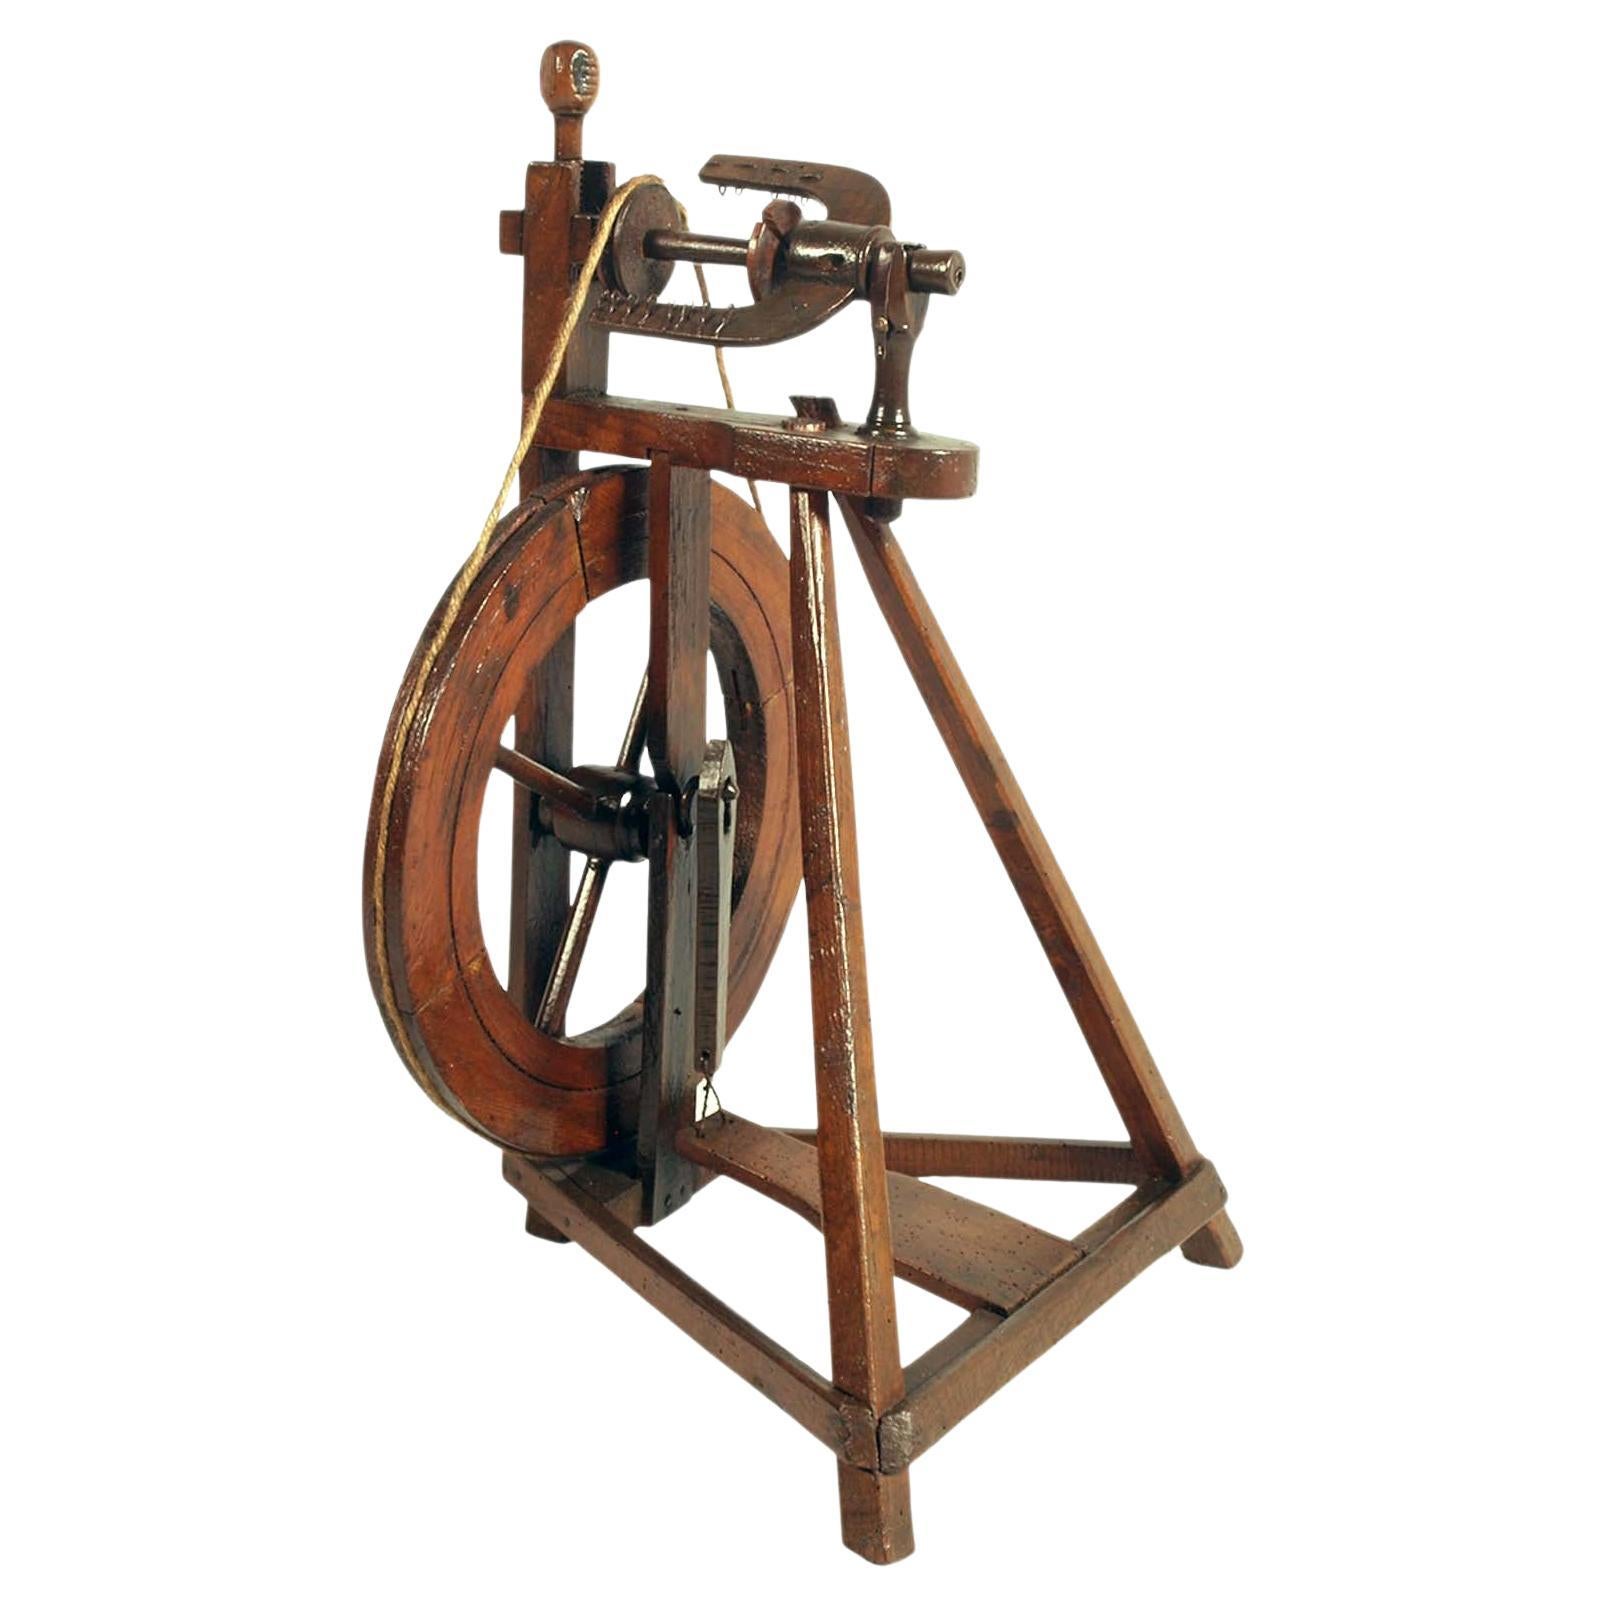 Tyrorianisches Spinningrad aus Nussbaumholz aus dem 18. Jahrhundert, noch immer funktionstüchtig im Angebot